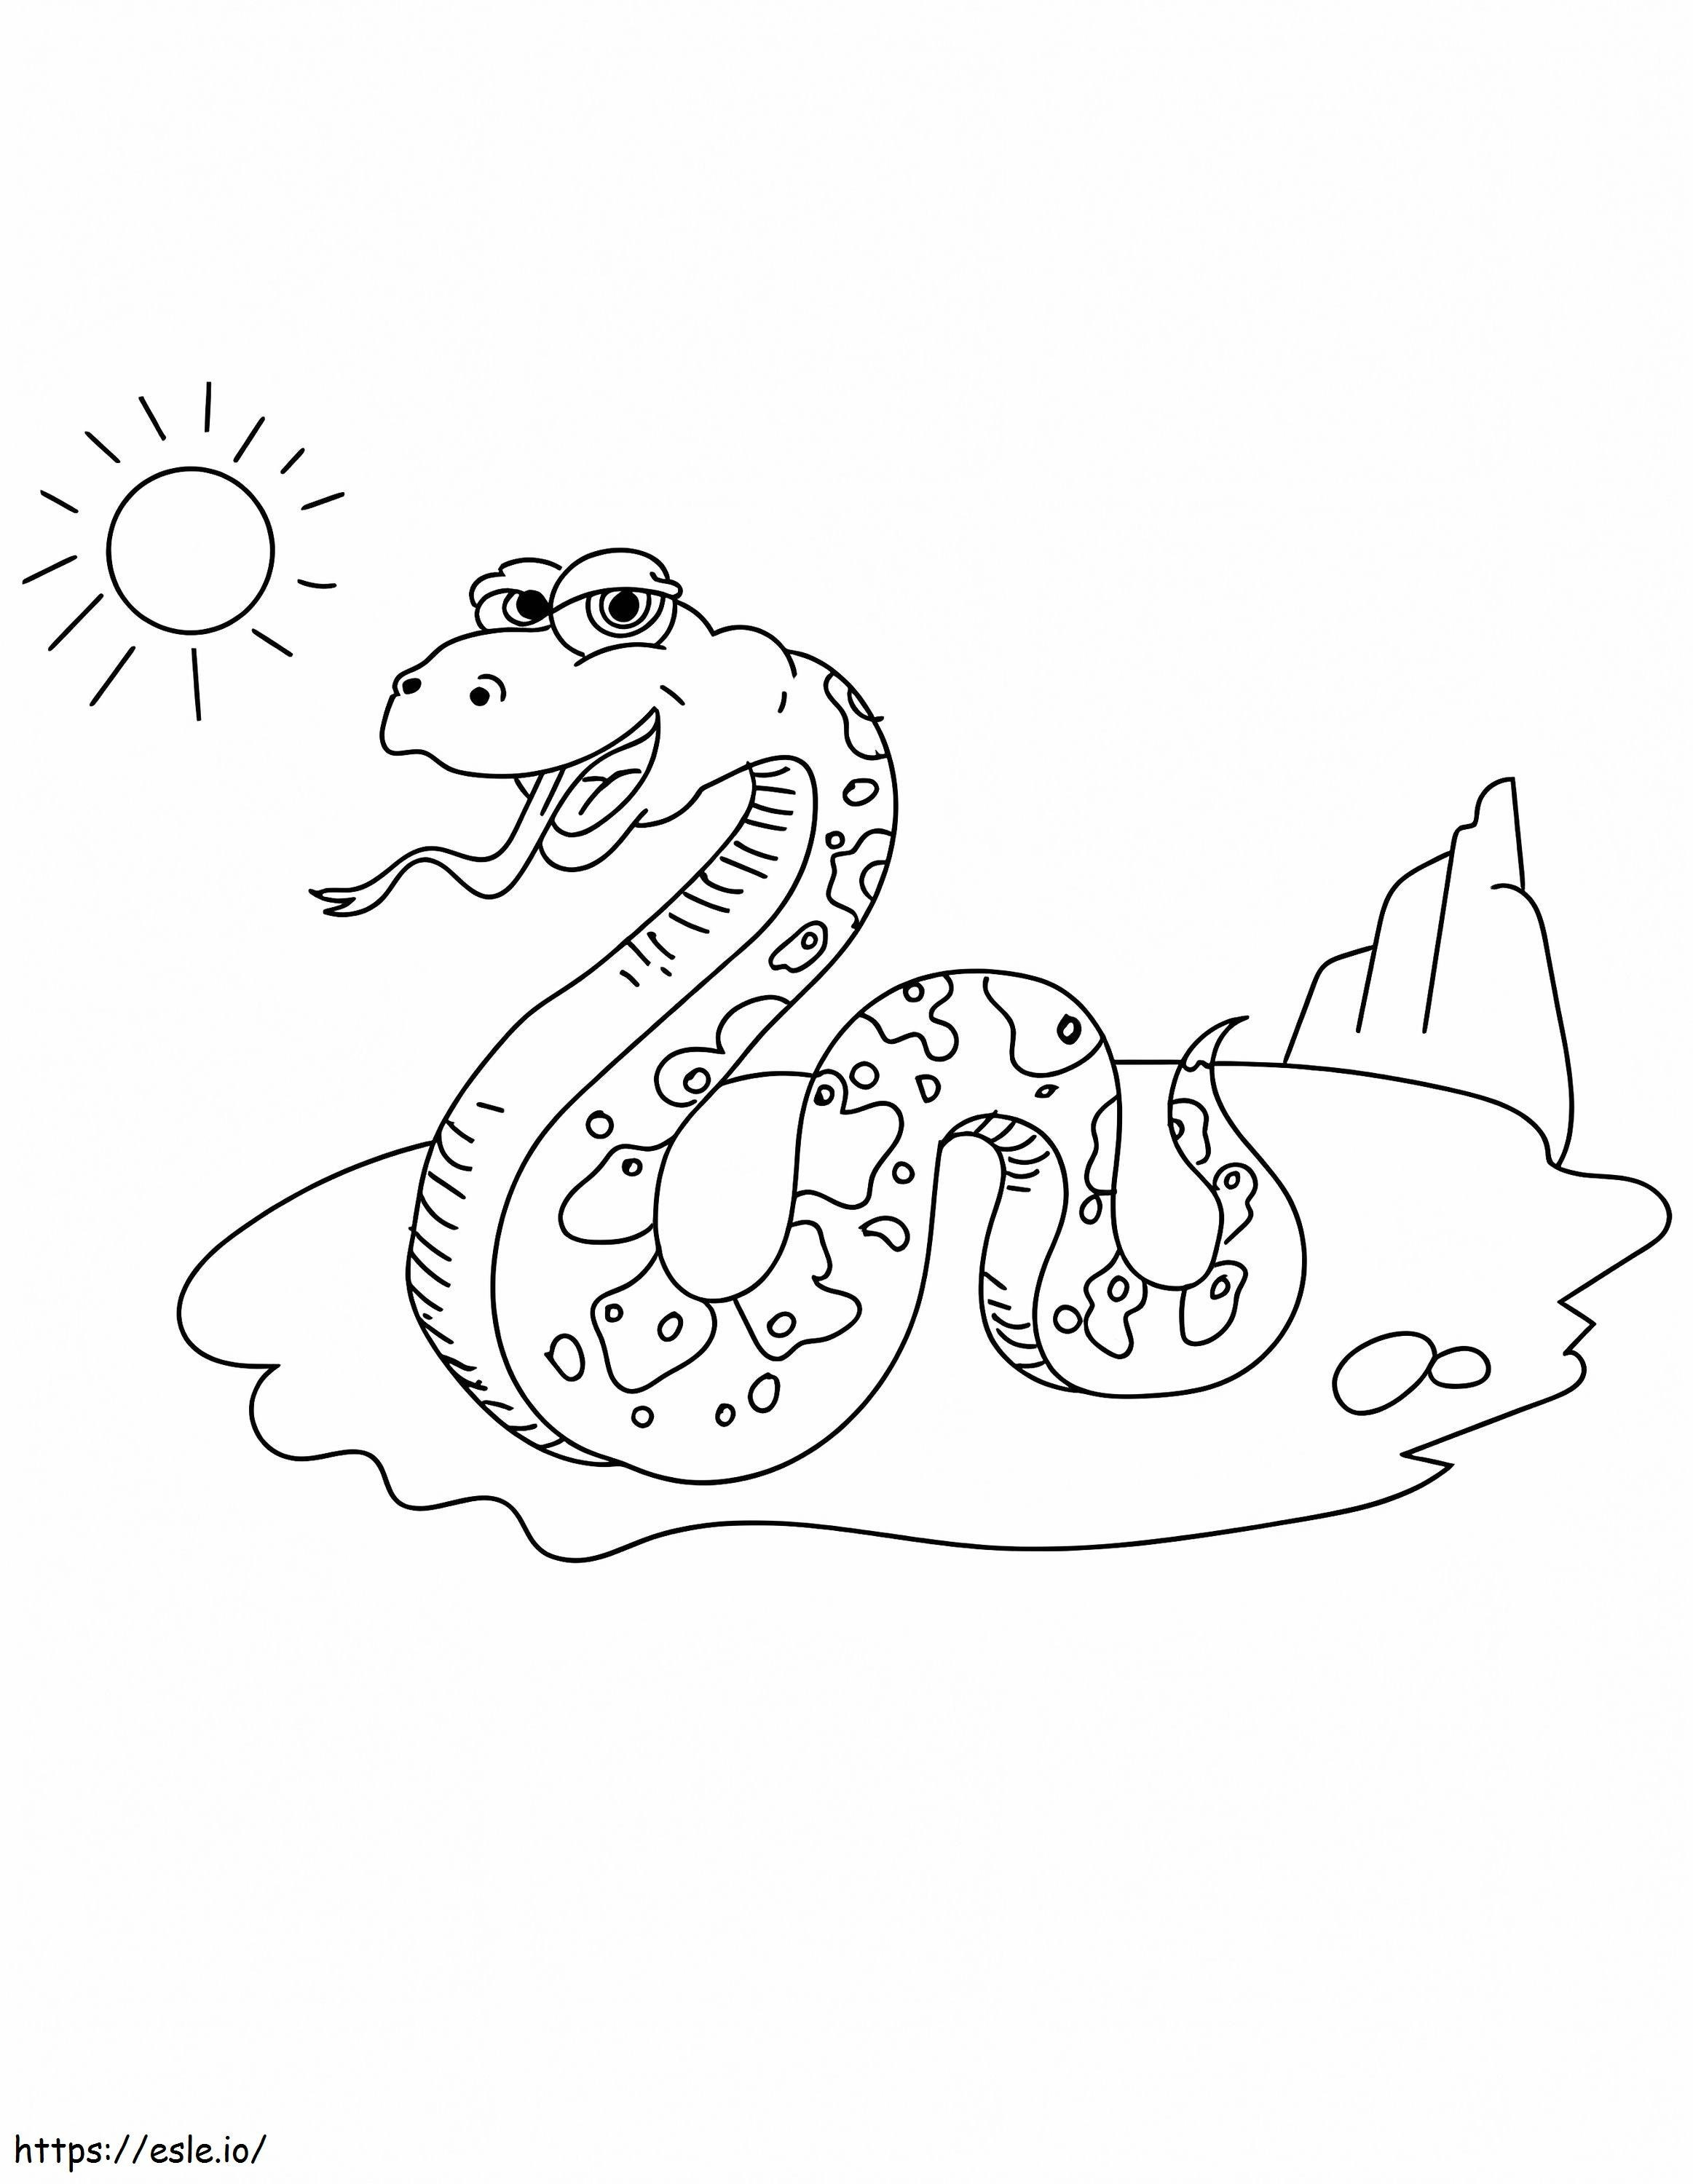 Coloriage Serpent imprimable gratuit à imprimer dessin